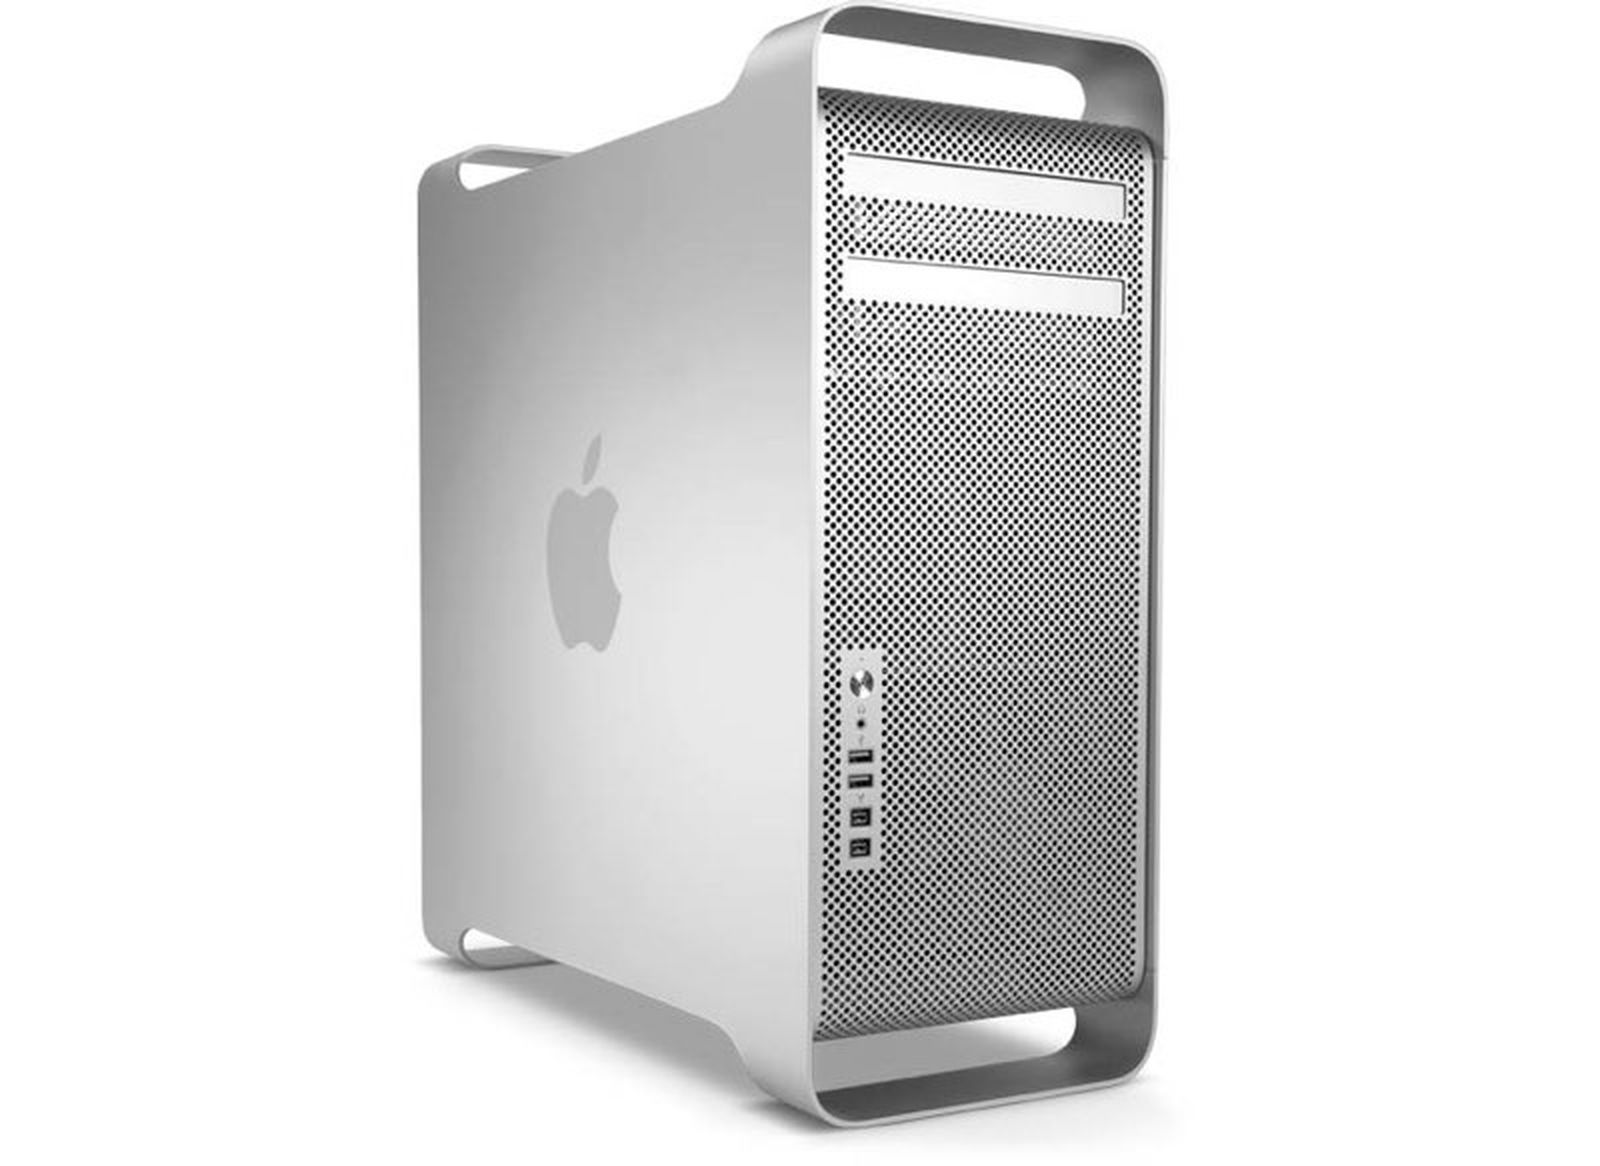 2012 mac desktop for gaming